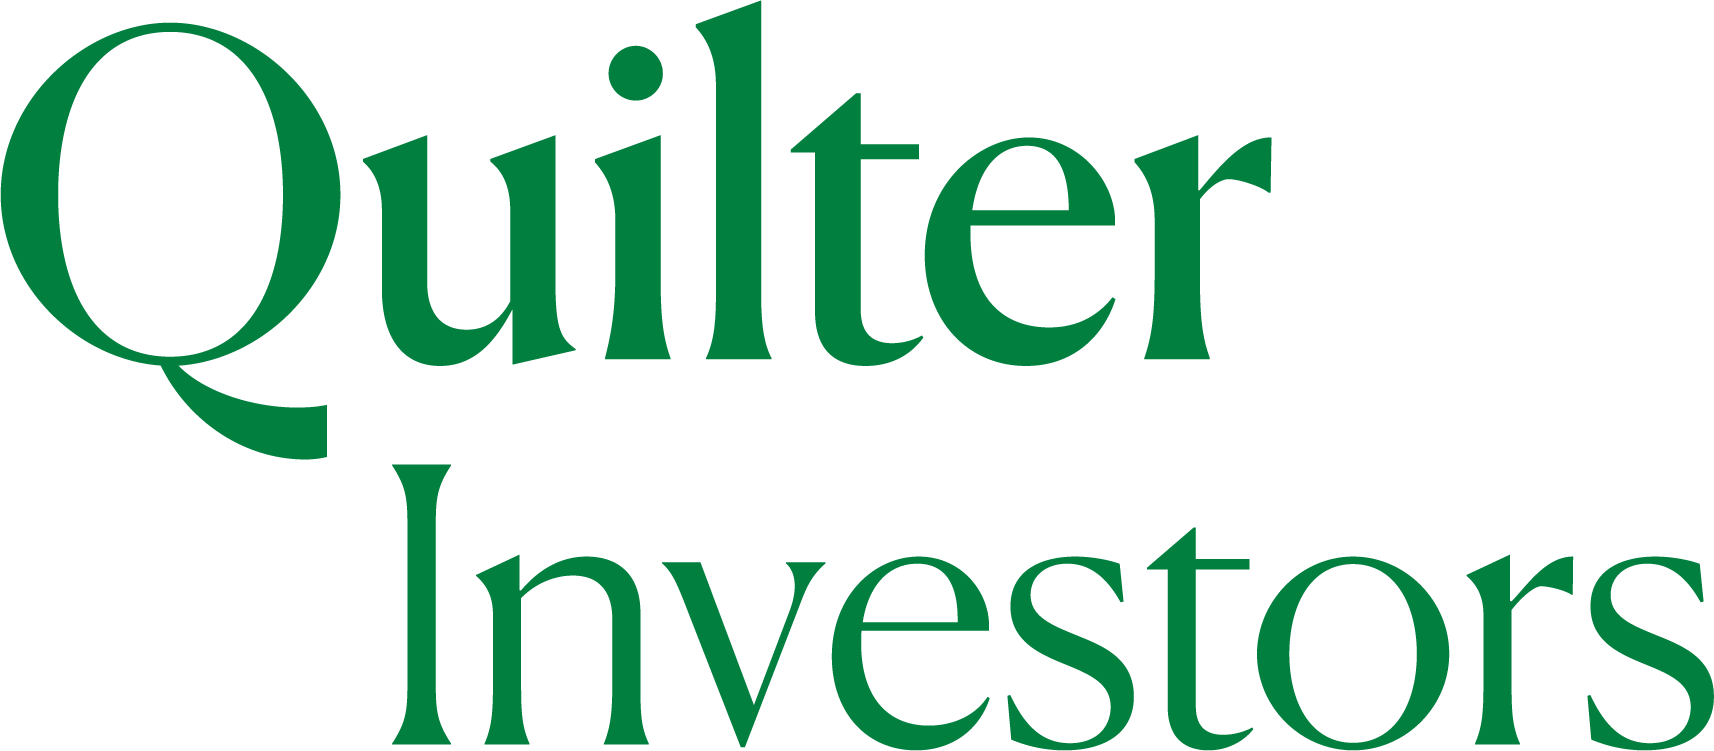 quilter-investors-logo-quilter-investors-logo